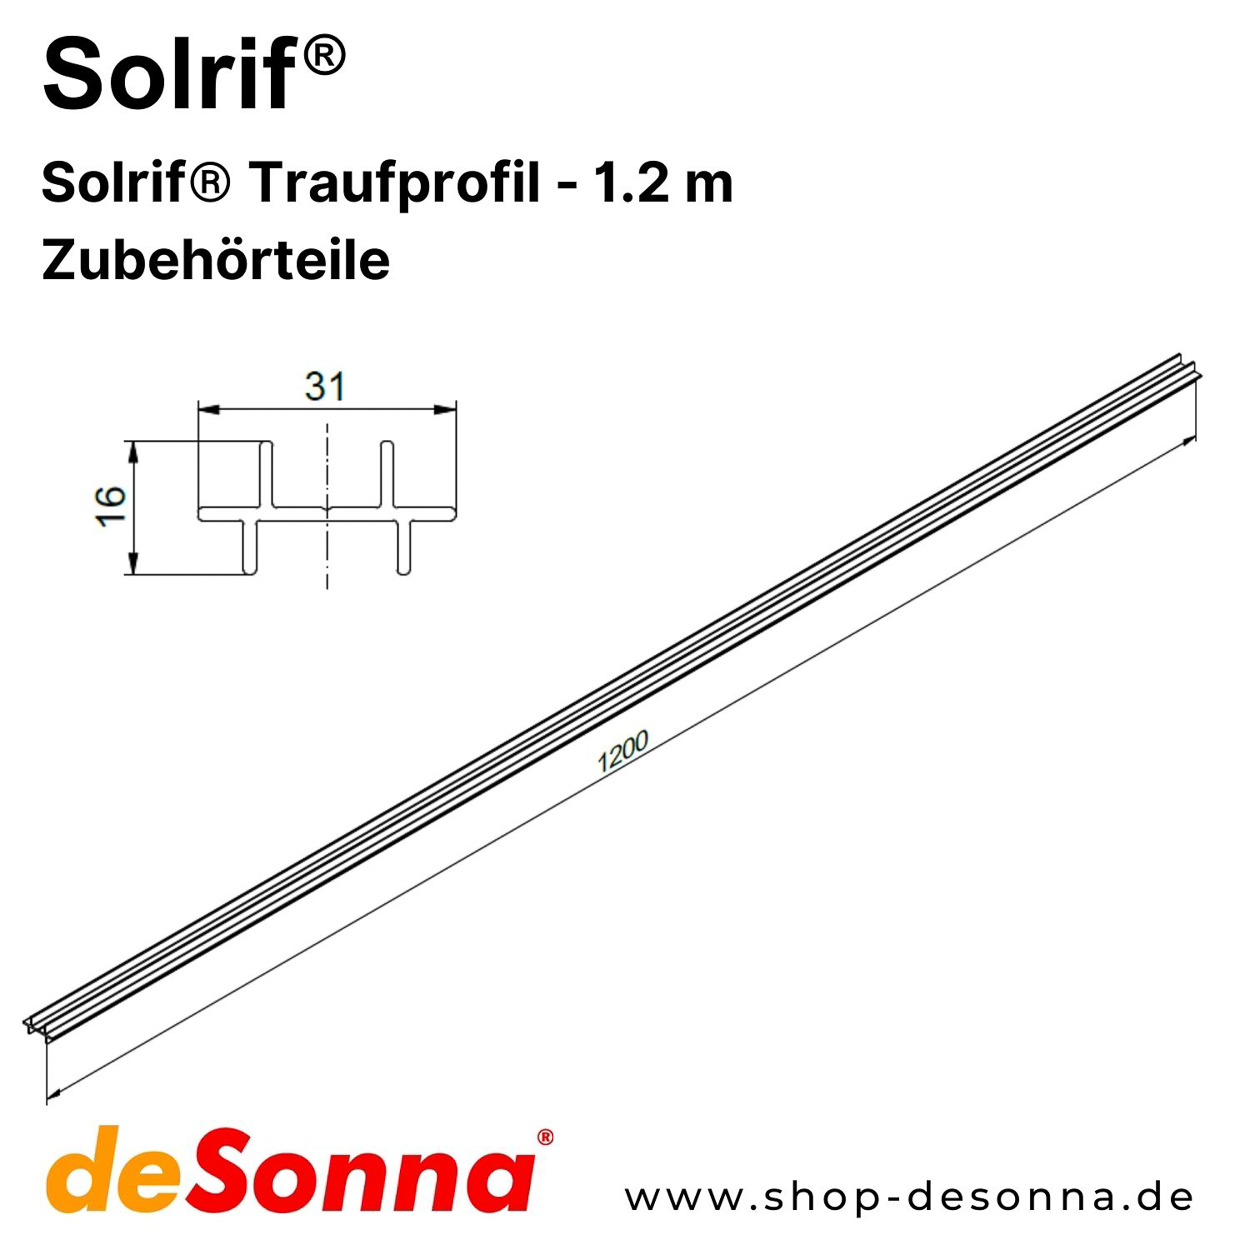 Solrif® Traufprofil - 1.2 m - Zubehörteile